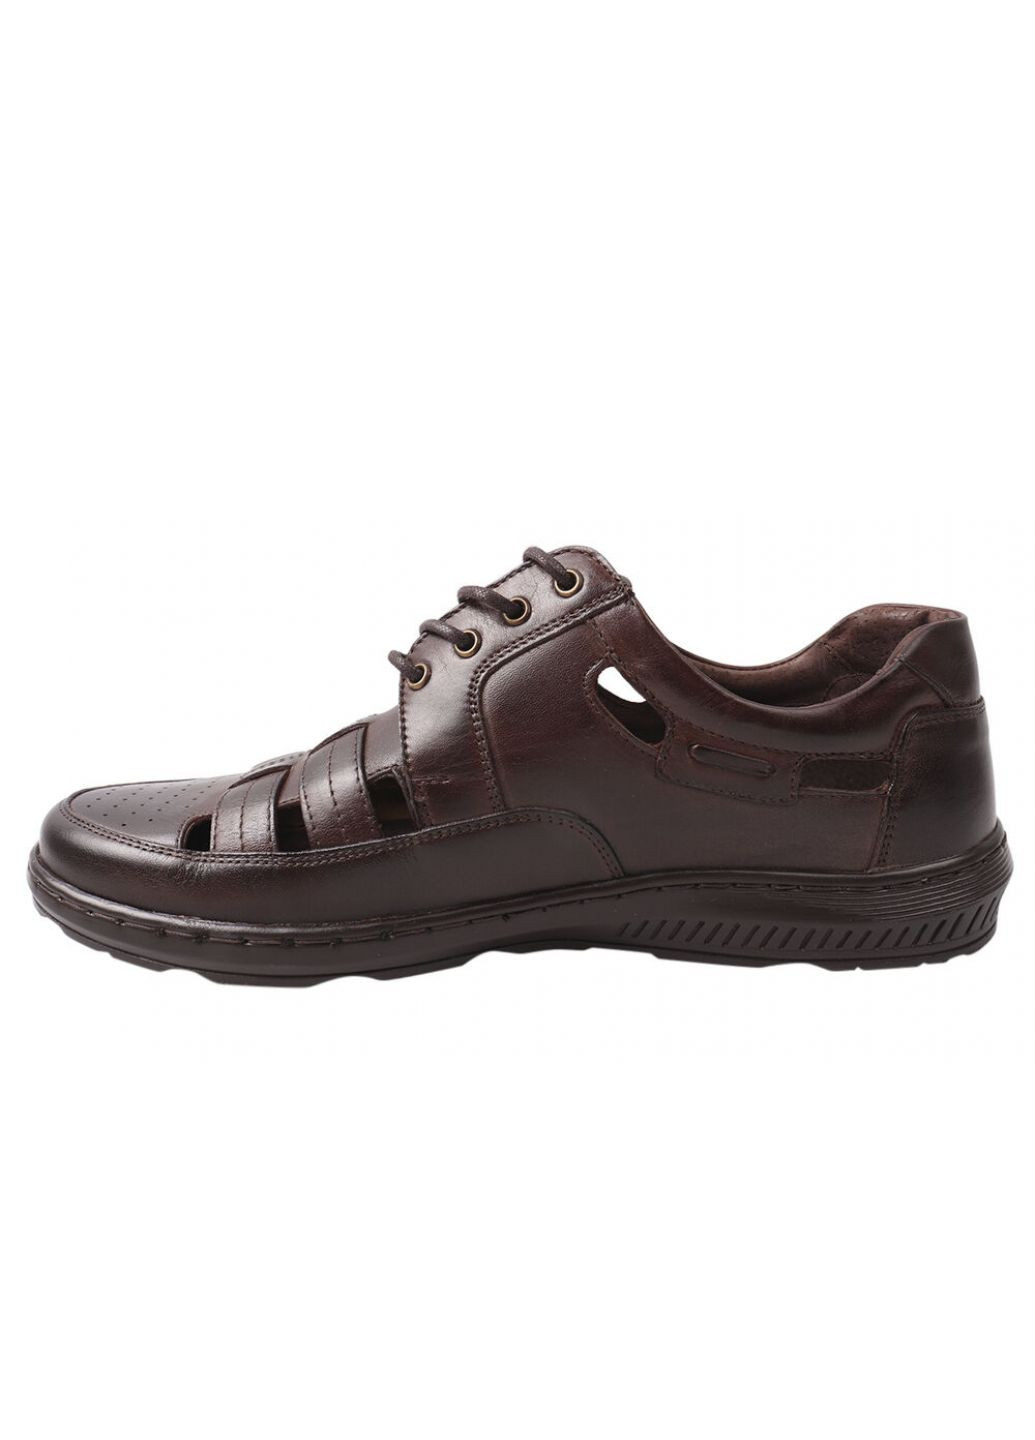 Коричневые туфли мужские из натуральной кожи, на низком ходу, на шнуровке, цвет кабир, Pan